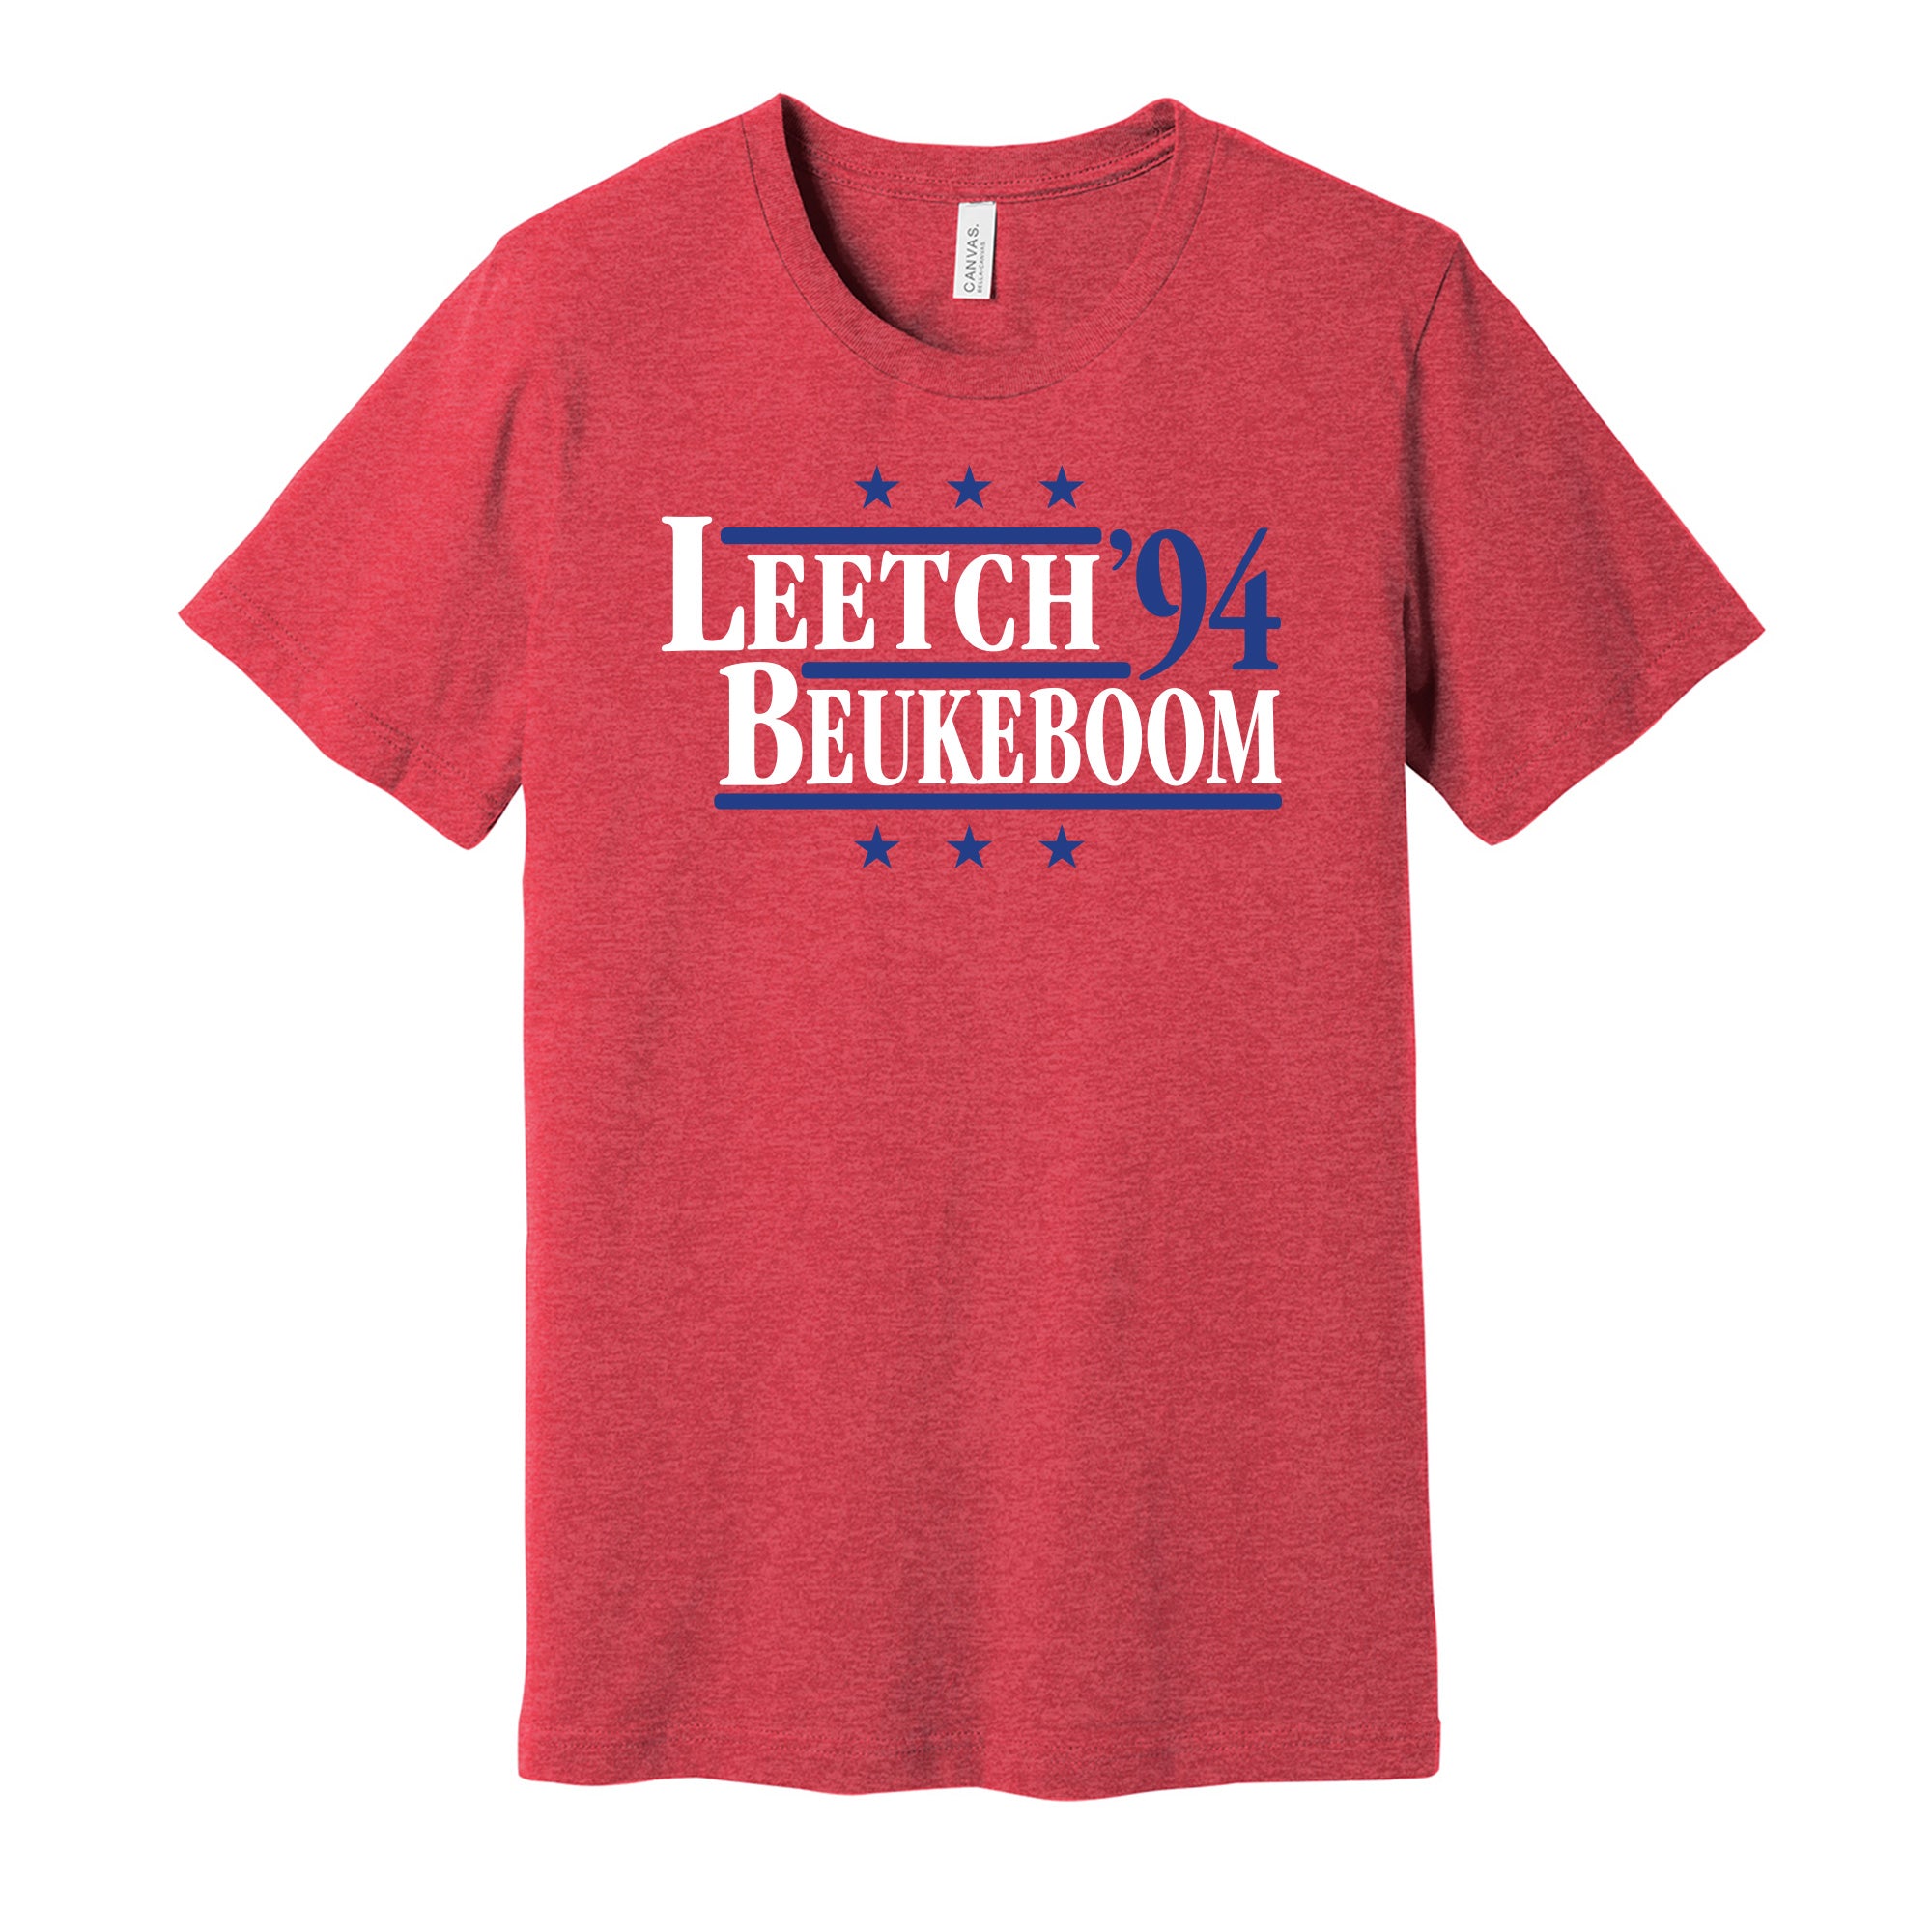 New York Rangers Legends: Brian Leetch